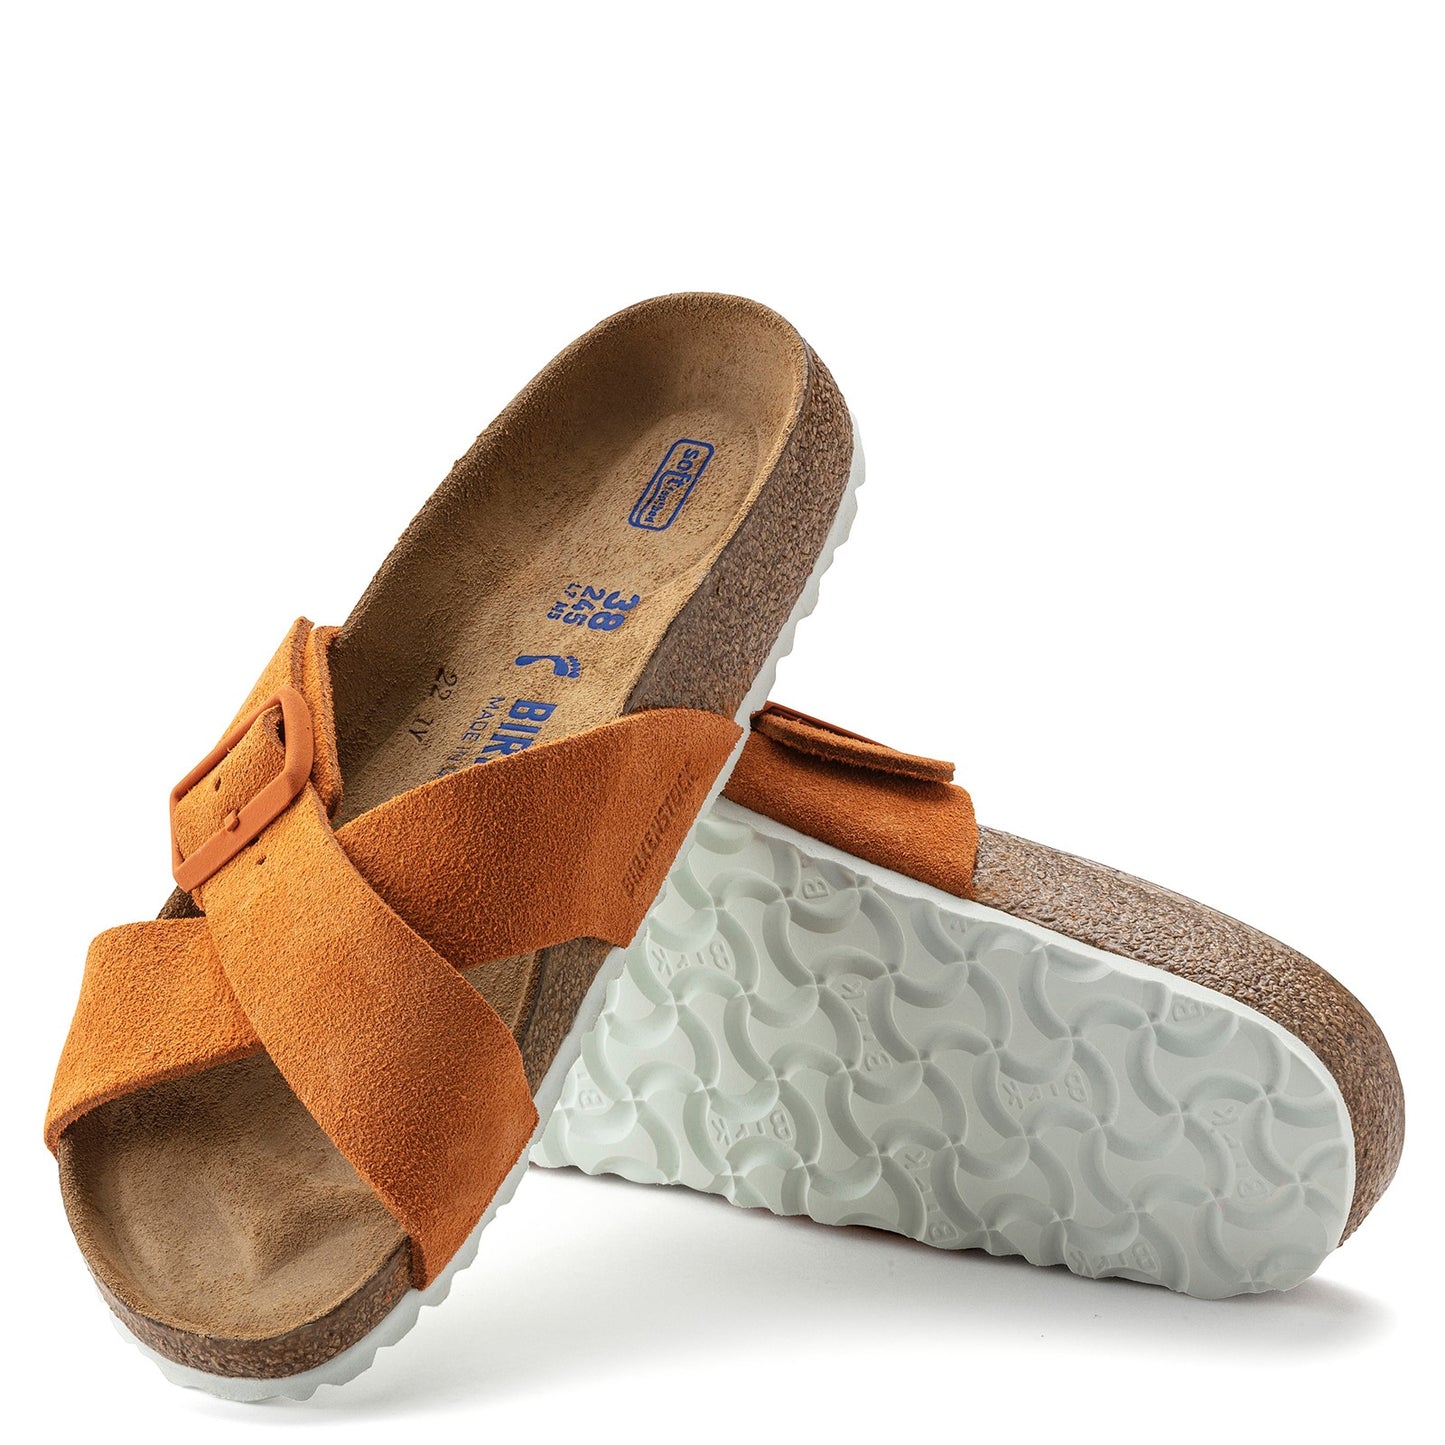 Peltz Shoes  Women's Birkenstock Siena Sandal - Narrow Width RUSSET 1021 633 N